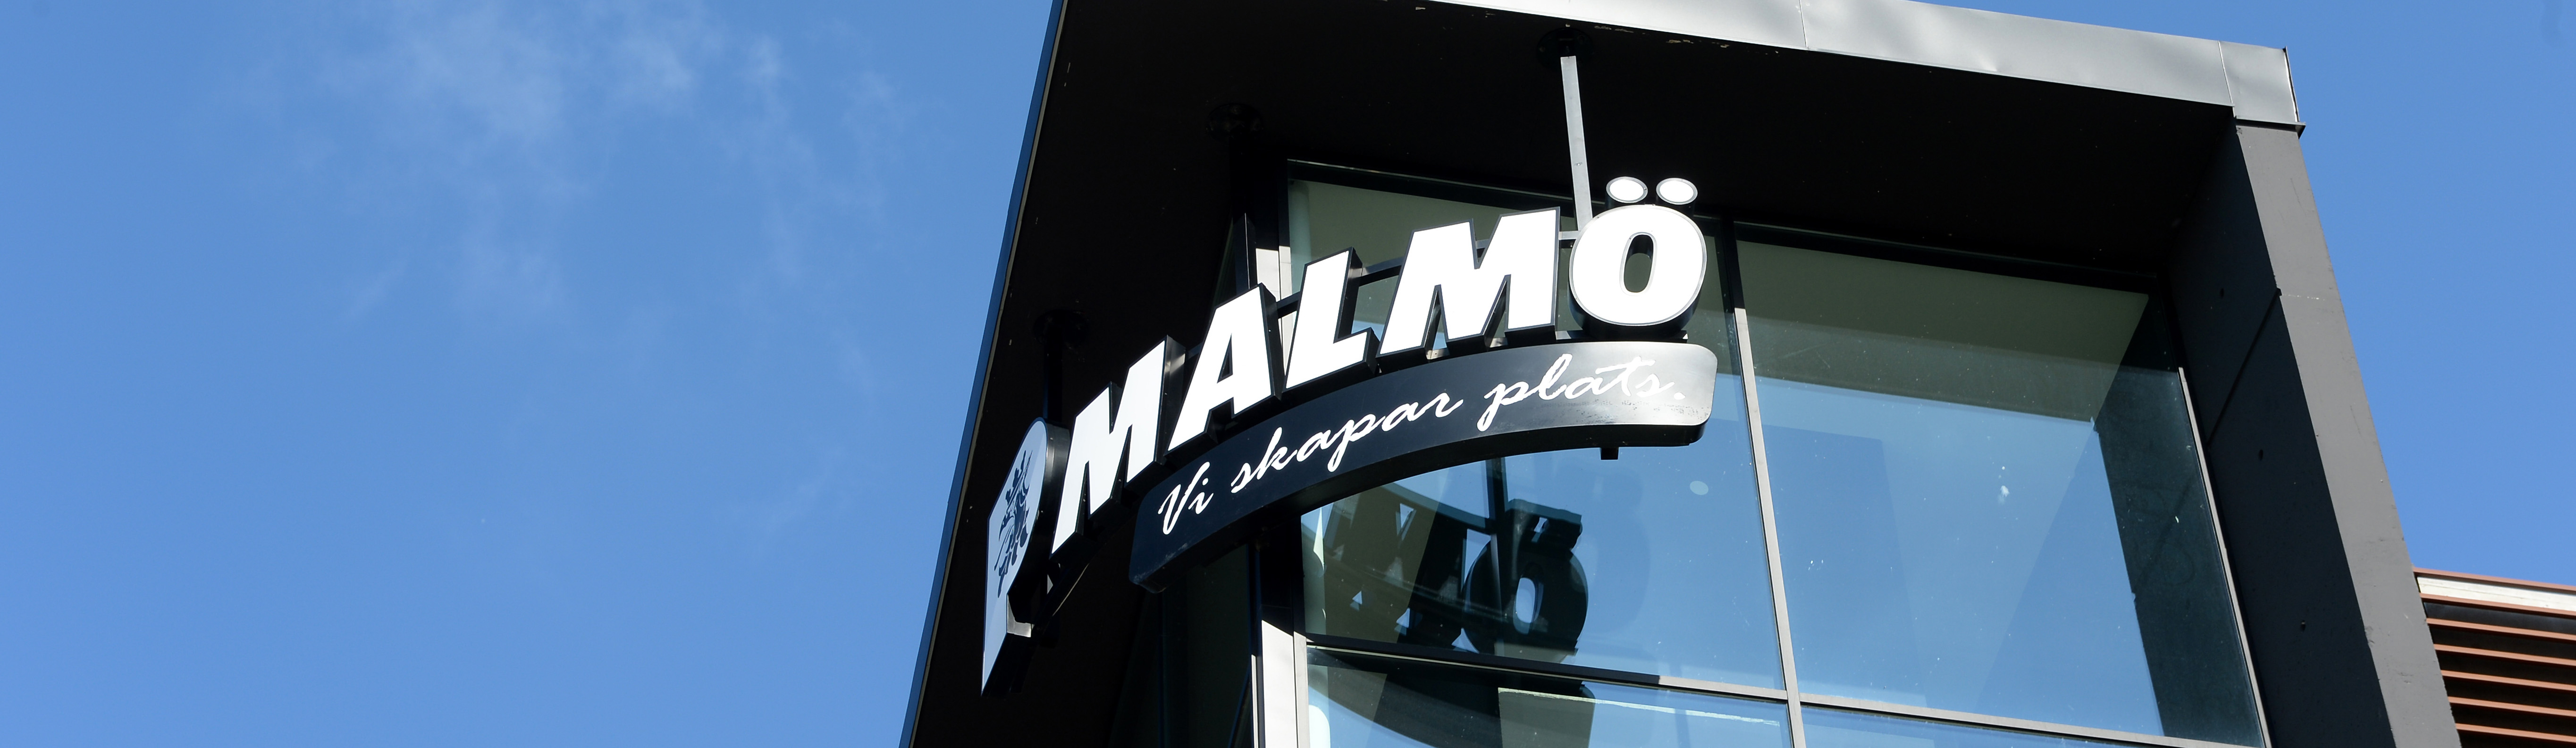 Parkerings Malmös logotype i vitt på P-huset Hyllie Allés fasad med en klarblå himmel i bakgrunden